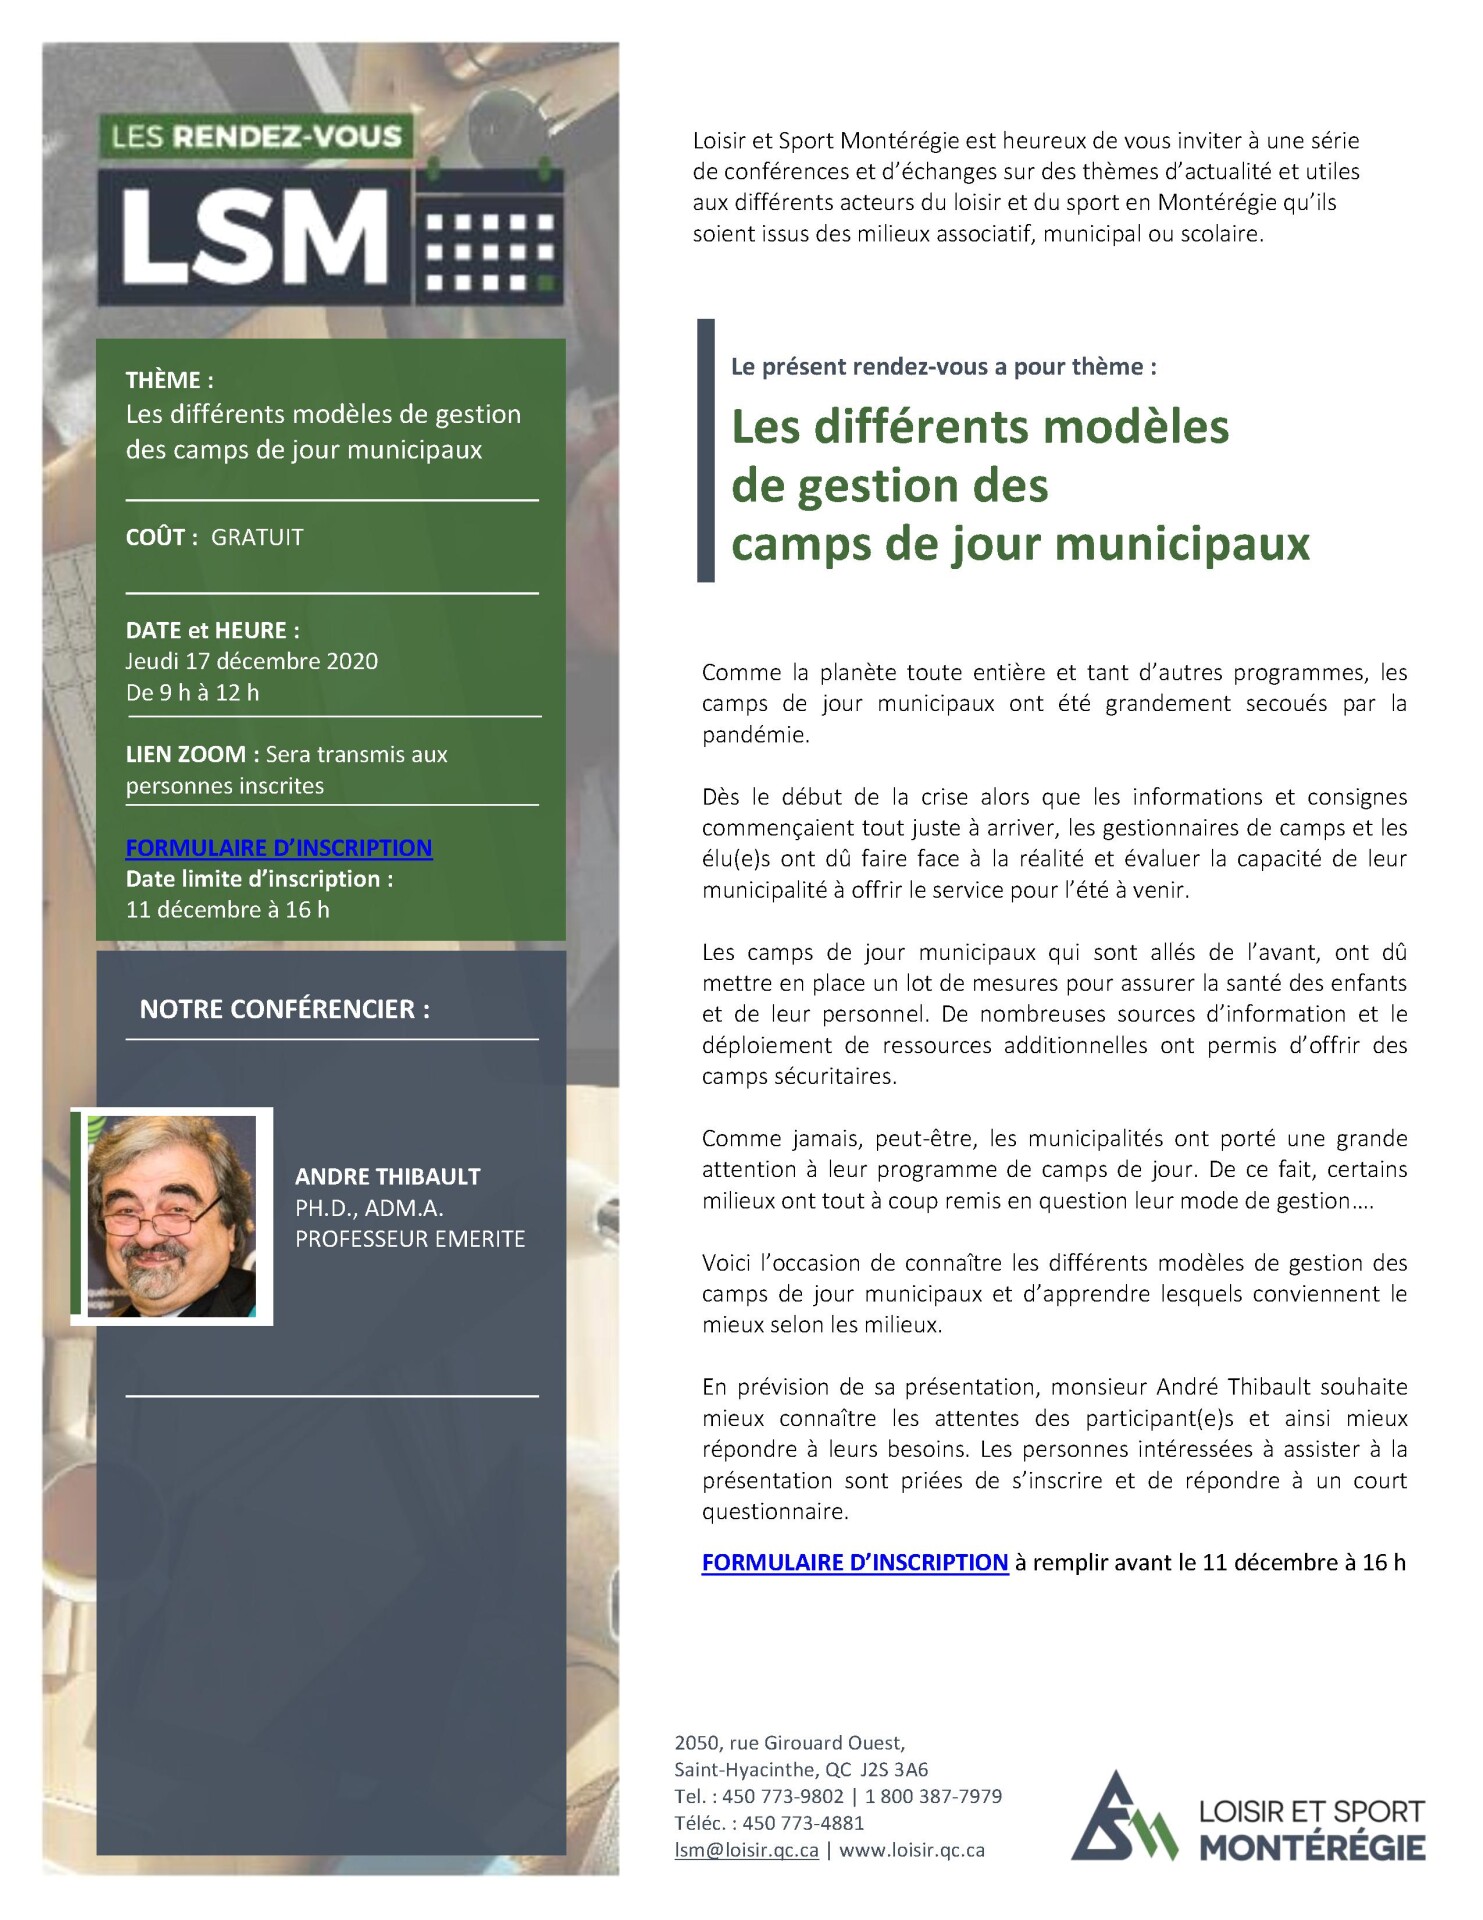 RDV LSM Modeles de gestion des cdj municipauxfd v2